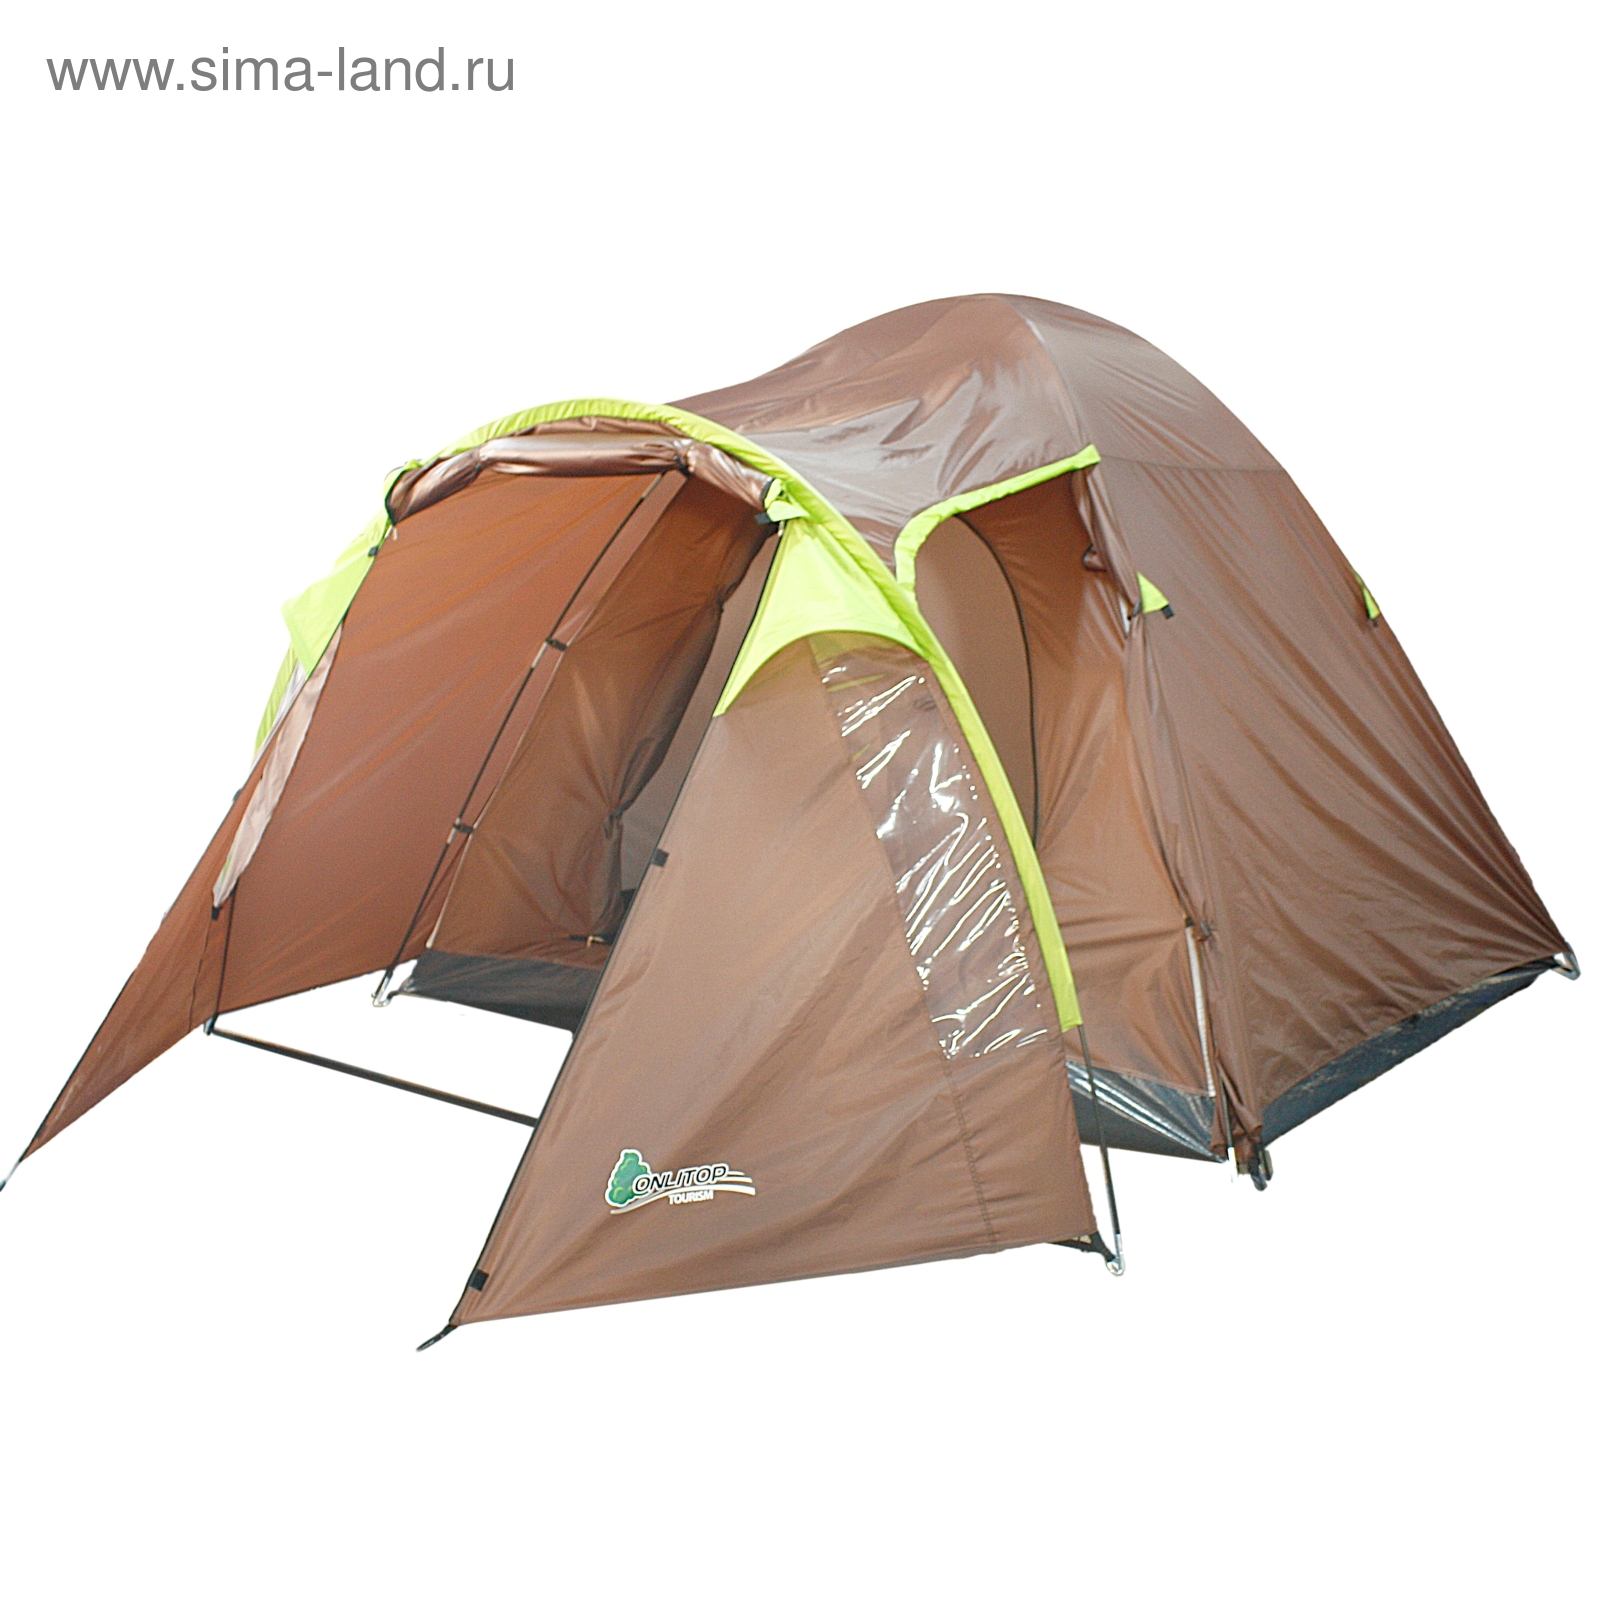 Палатка туристическая Skaun 4х-местная